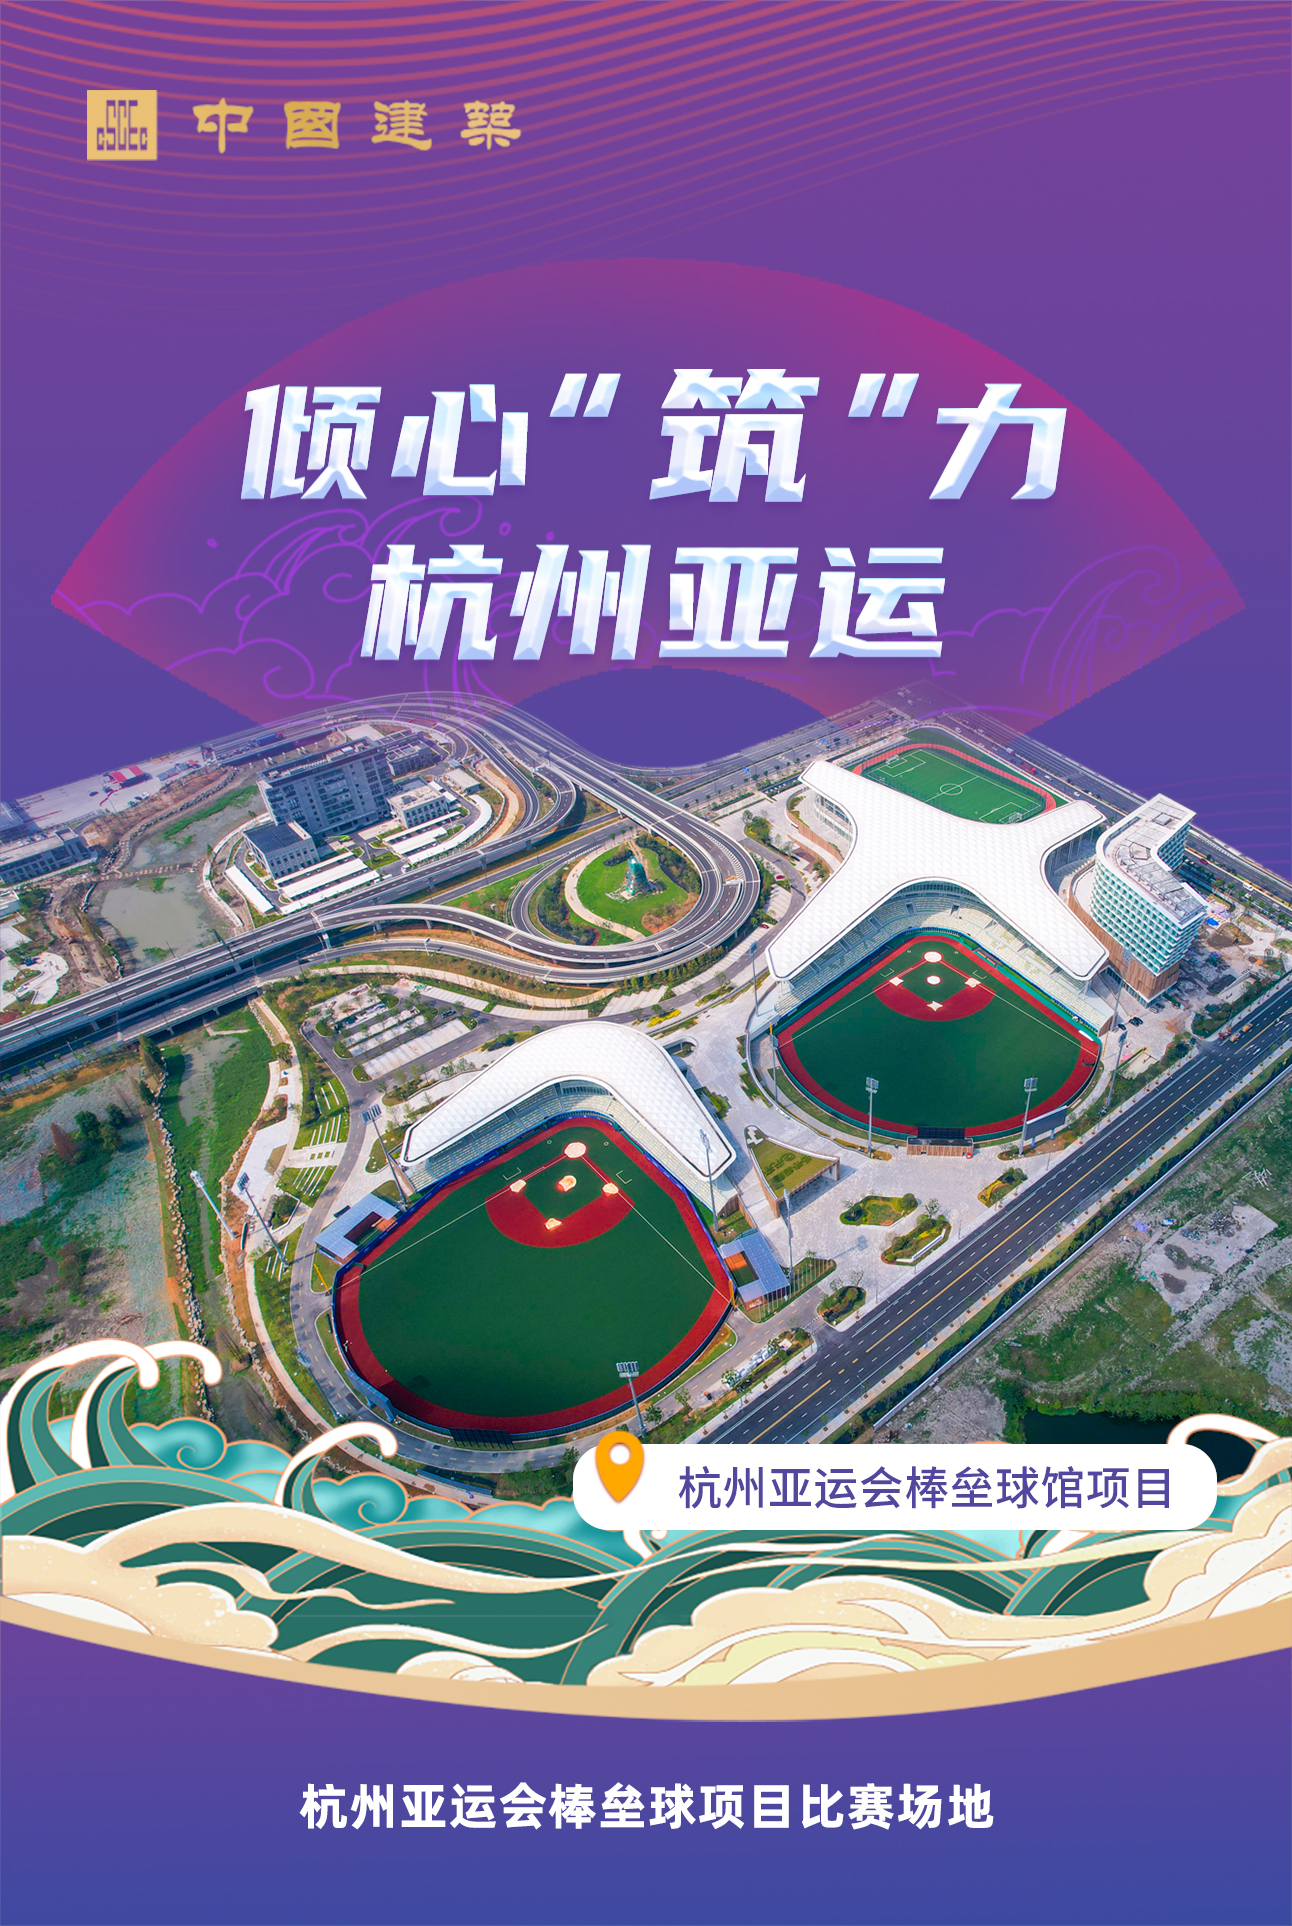 杭州亚运会棒垒球馆项目.jpg